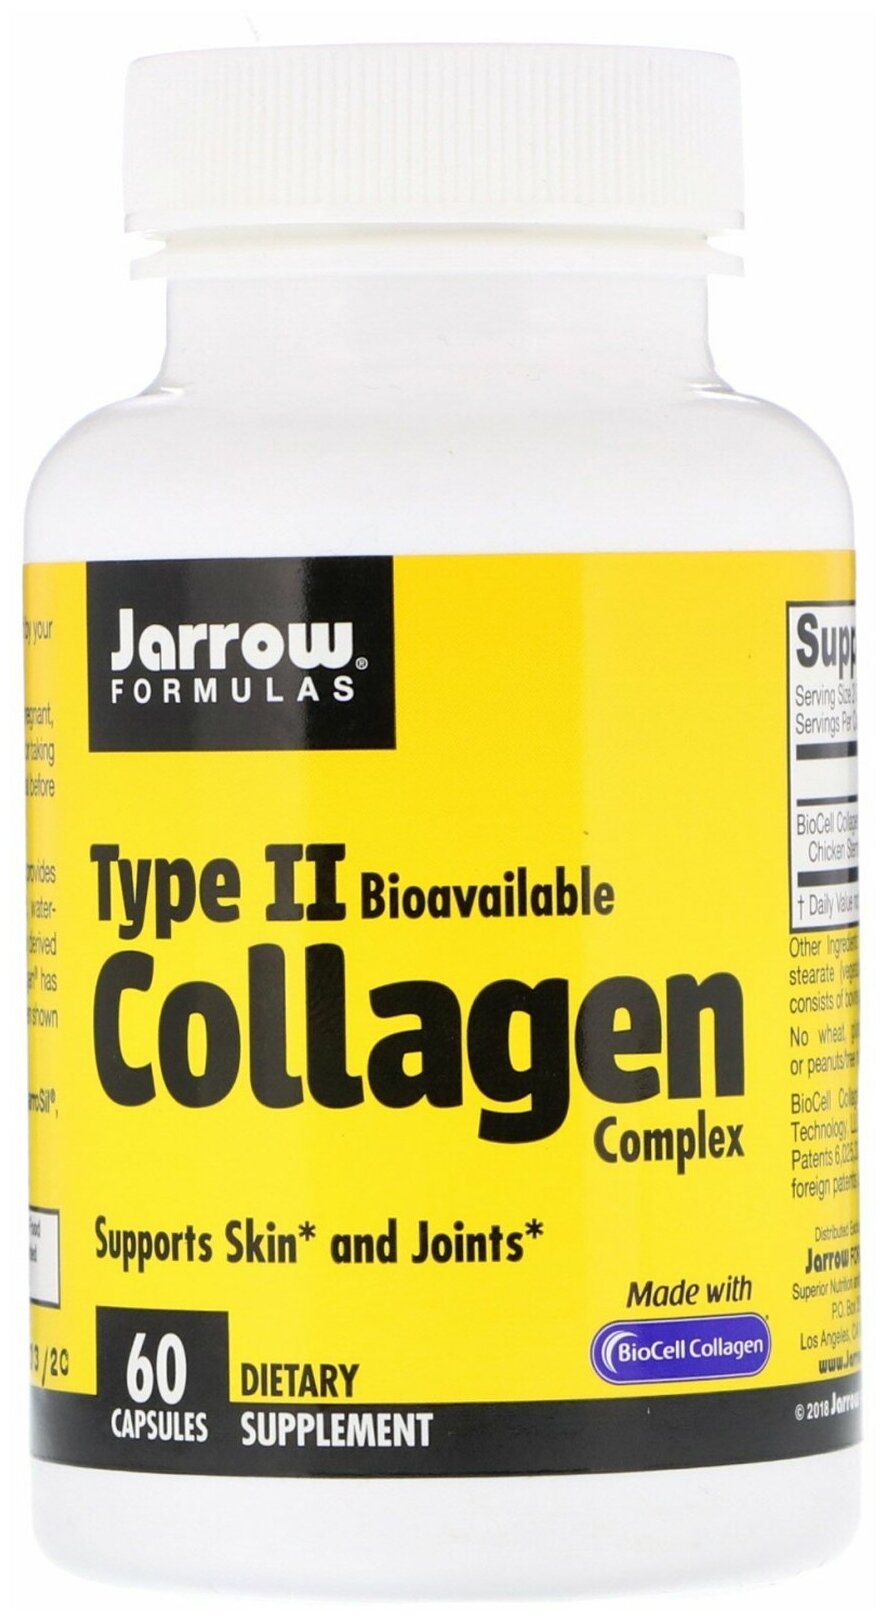 Jarrow Formulas - Type II Collagen Complex (60 капсул) - коллаген 2-го типа для поддержки здоровья суставов